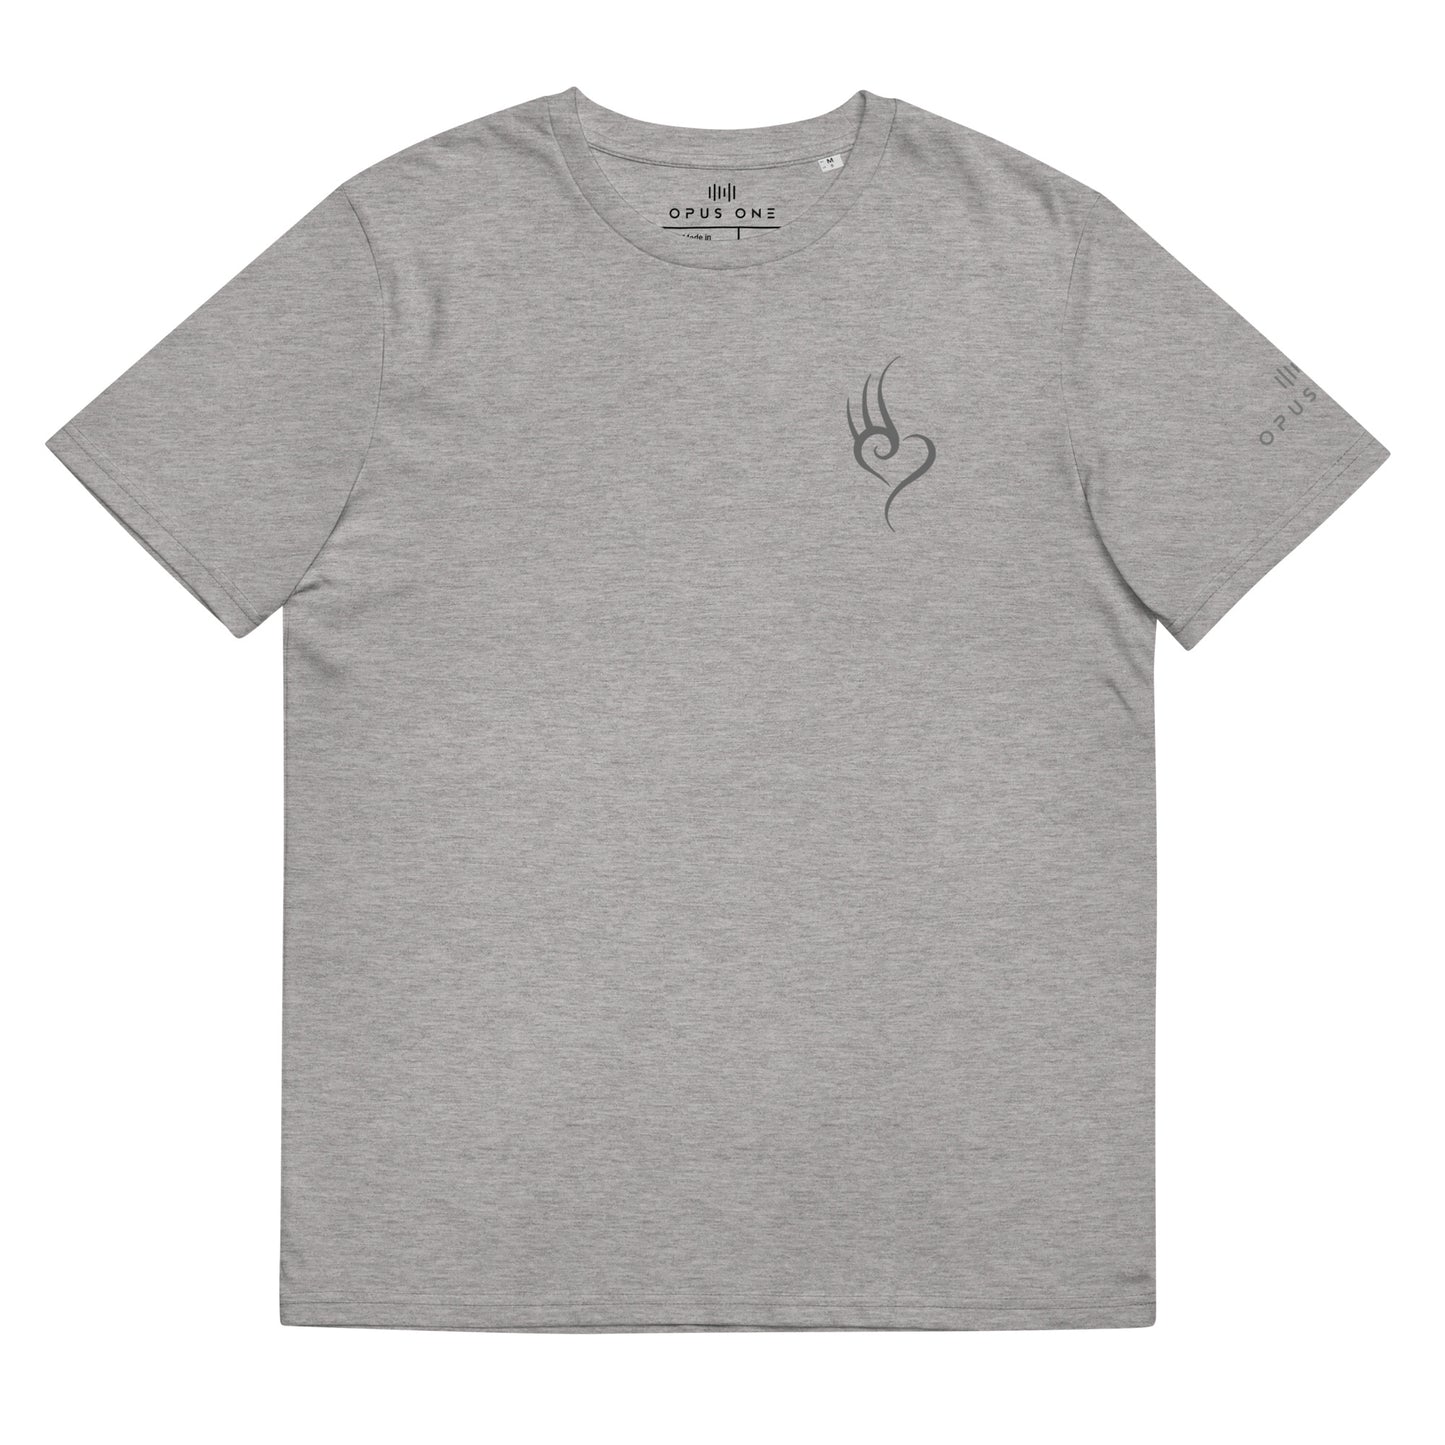 D&B (v2) Unisex organic cotton t-shirt (Grey Text)